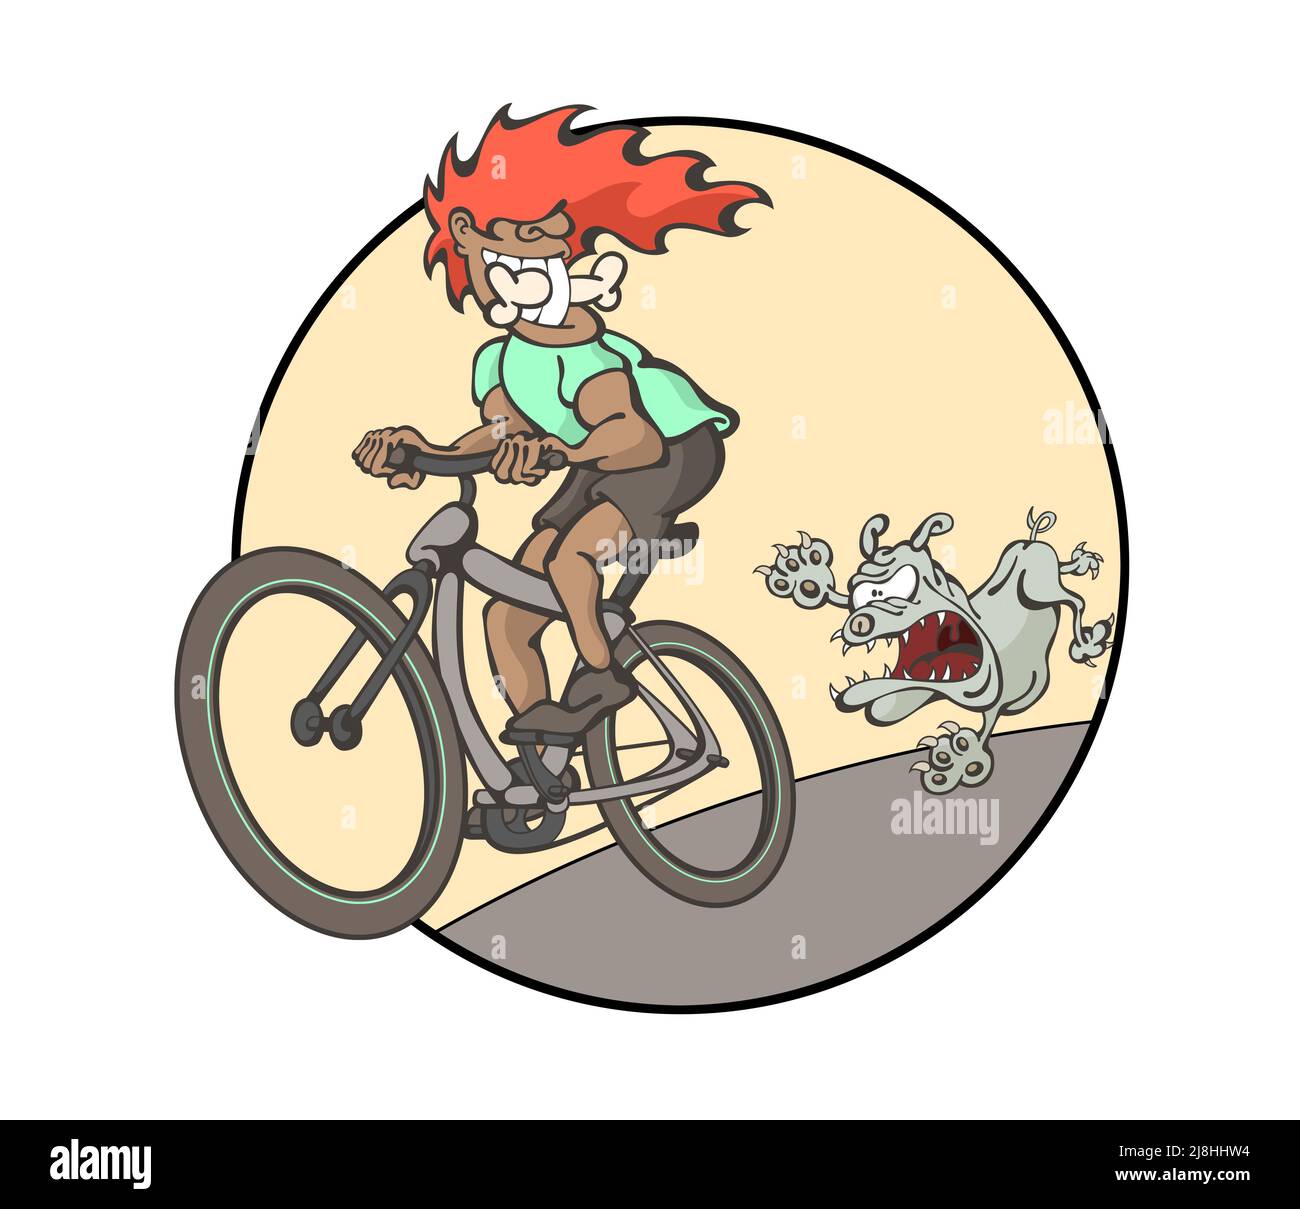 Kreative Illustration eines jungen Mannes, der ein Fahrrad fährt, lächelnd. Lustig wütend Hund läuft hinter, jagen einen Knochen. Cool Sport , Mountainbiken , furchtlos Stockfoto